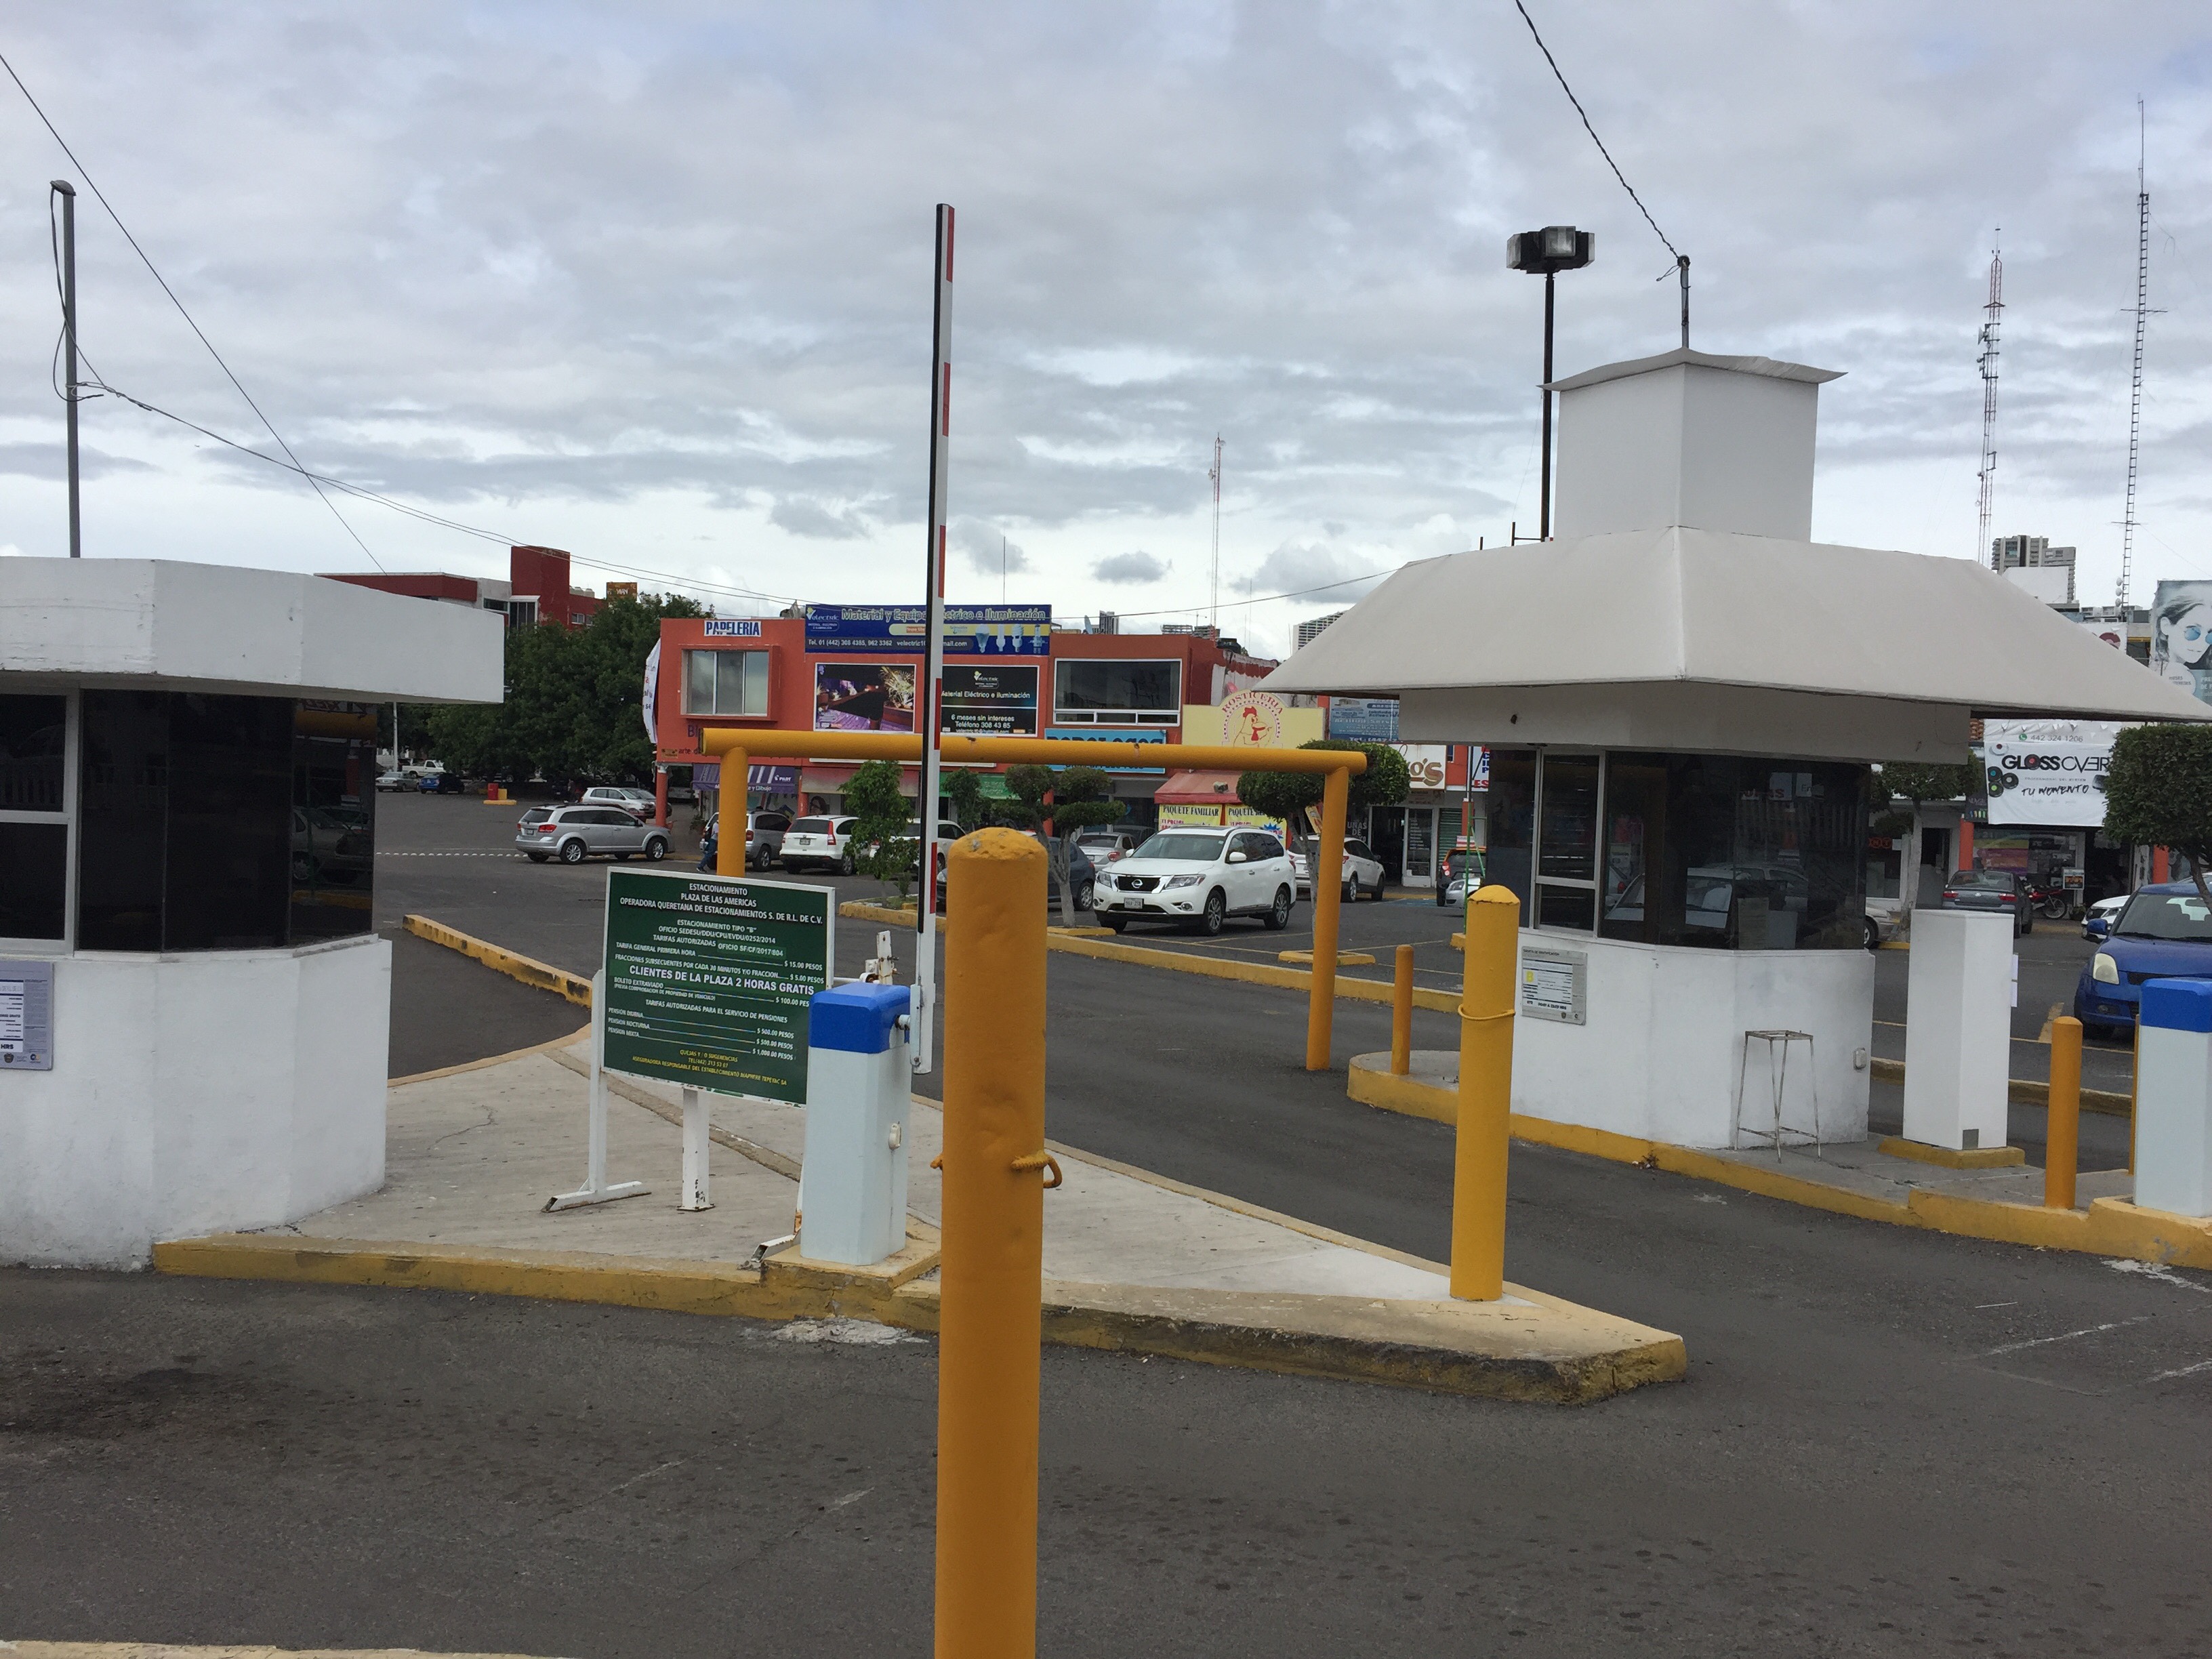  “Garantizar gratuidad de estacionamiento hará a clientes regresar a Plaza de las Américas”: Locatarios